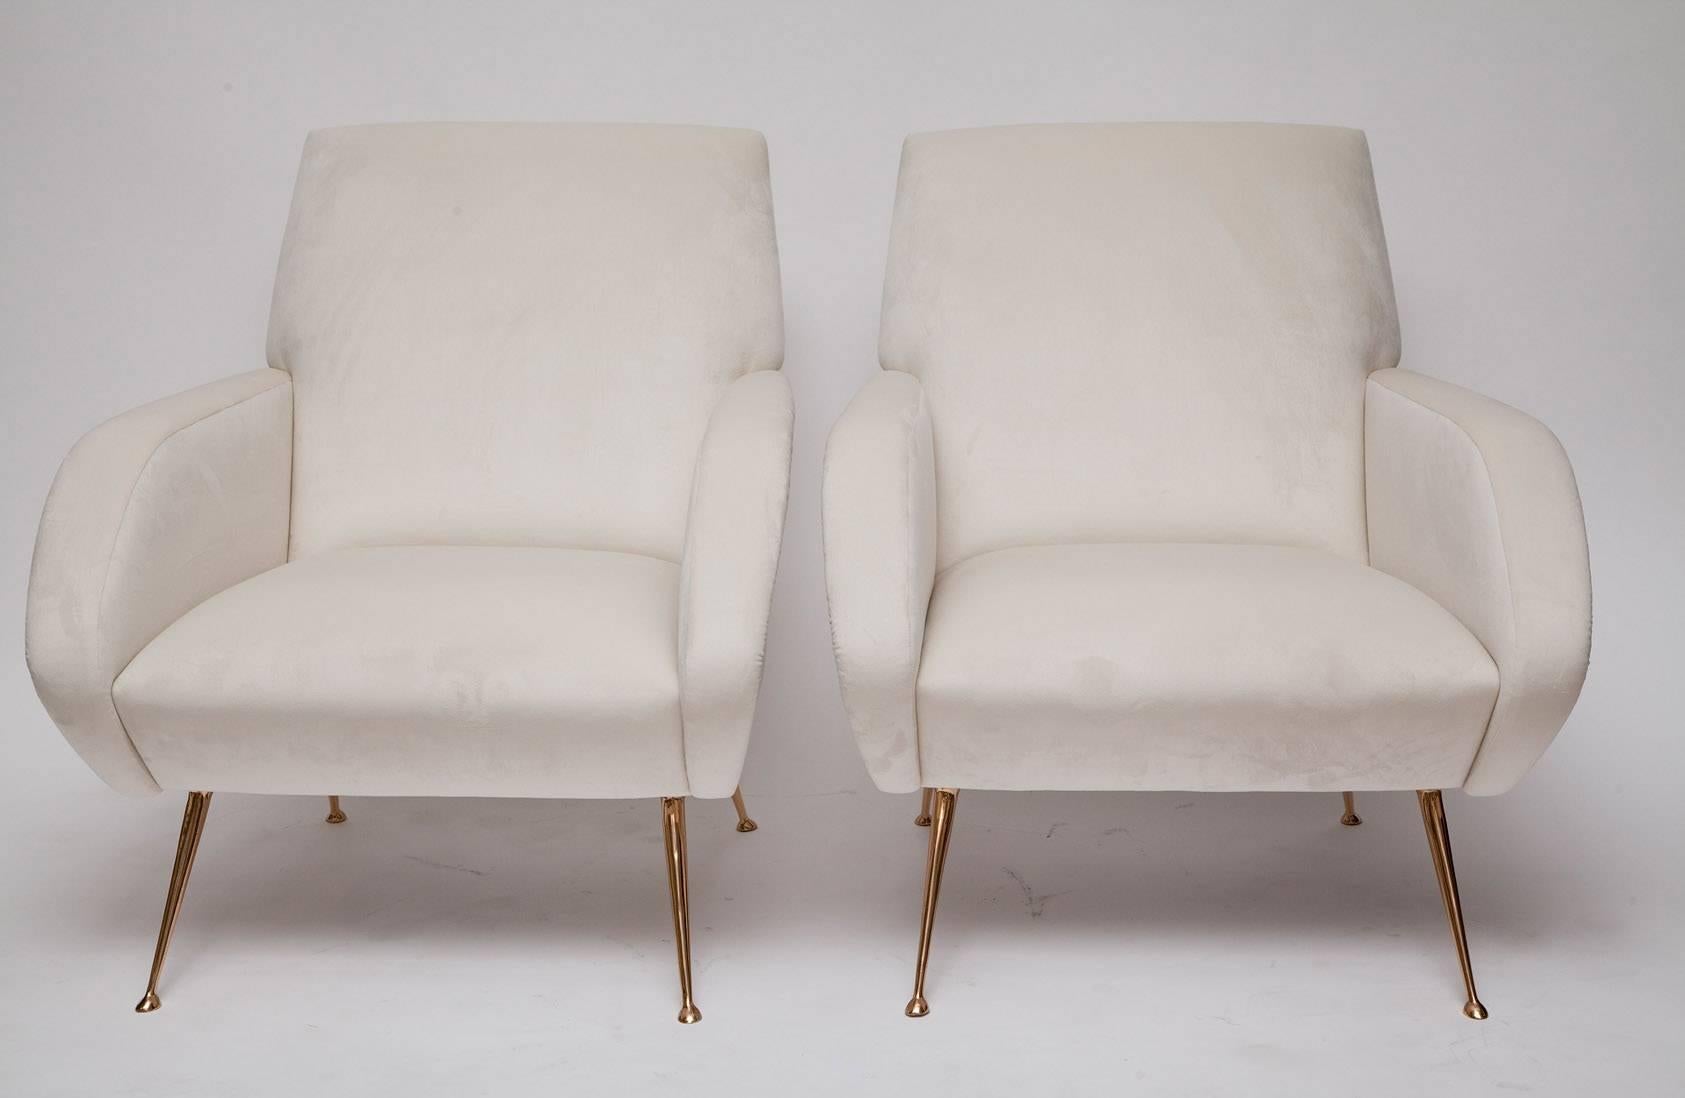 Der Roma-Stuhl wurde vom italienischen Design der 1950er Jahre inspiriert und ist exklusiv bei uns erhältlich. Er zeichnet sich durch sein elegantes Midcentury-Design aus und passt gut in eine Wohnung oder ein Boudoir. Individuell gefertigte Bank